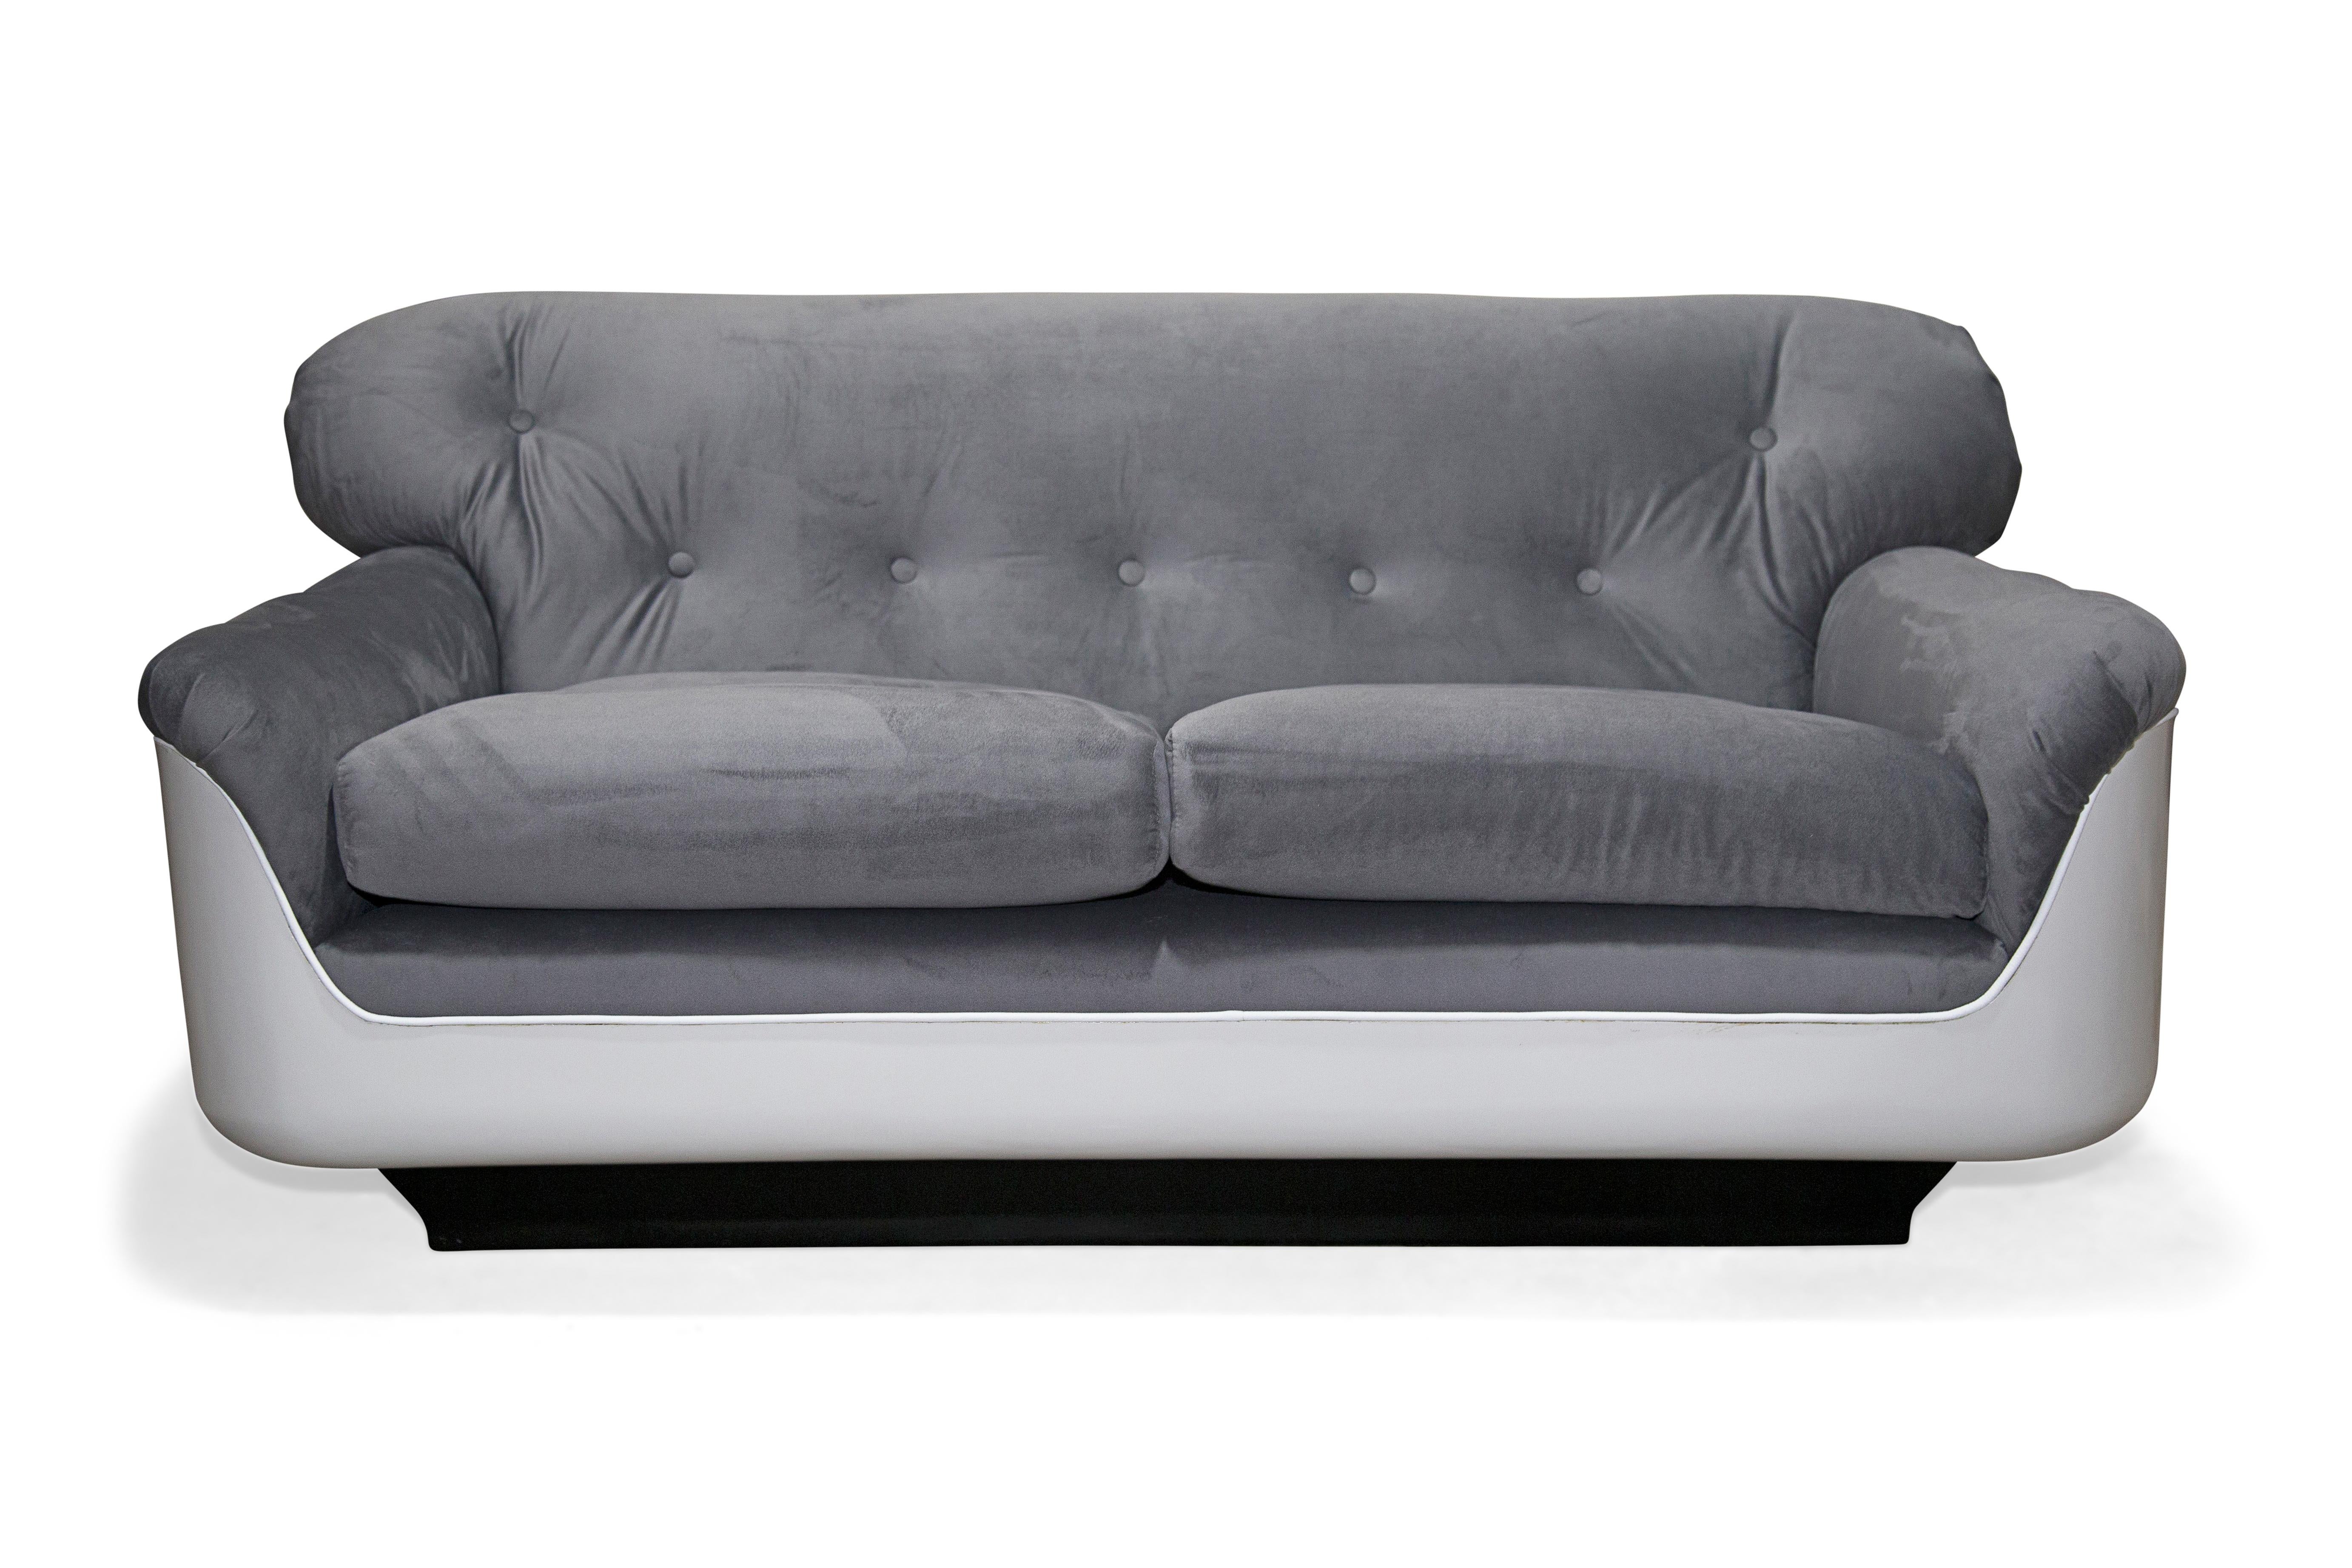 Das ab sofort erhältliche VIP-Sofa wurde für den wachsenden brasilianischen Büromöbelmarkt in den siebziger Jahren entwickelt. Das Sofa bietet bequem Platz für zwei Personen und besteht aus einer Fiberglasstruktur mit glattem grauem Samt.

Dieses